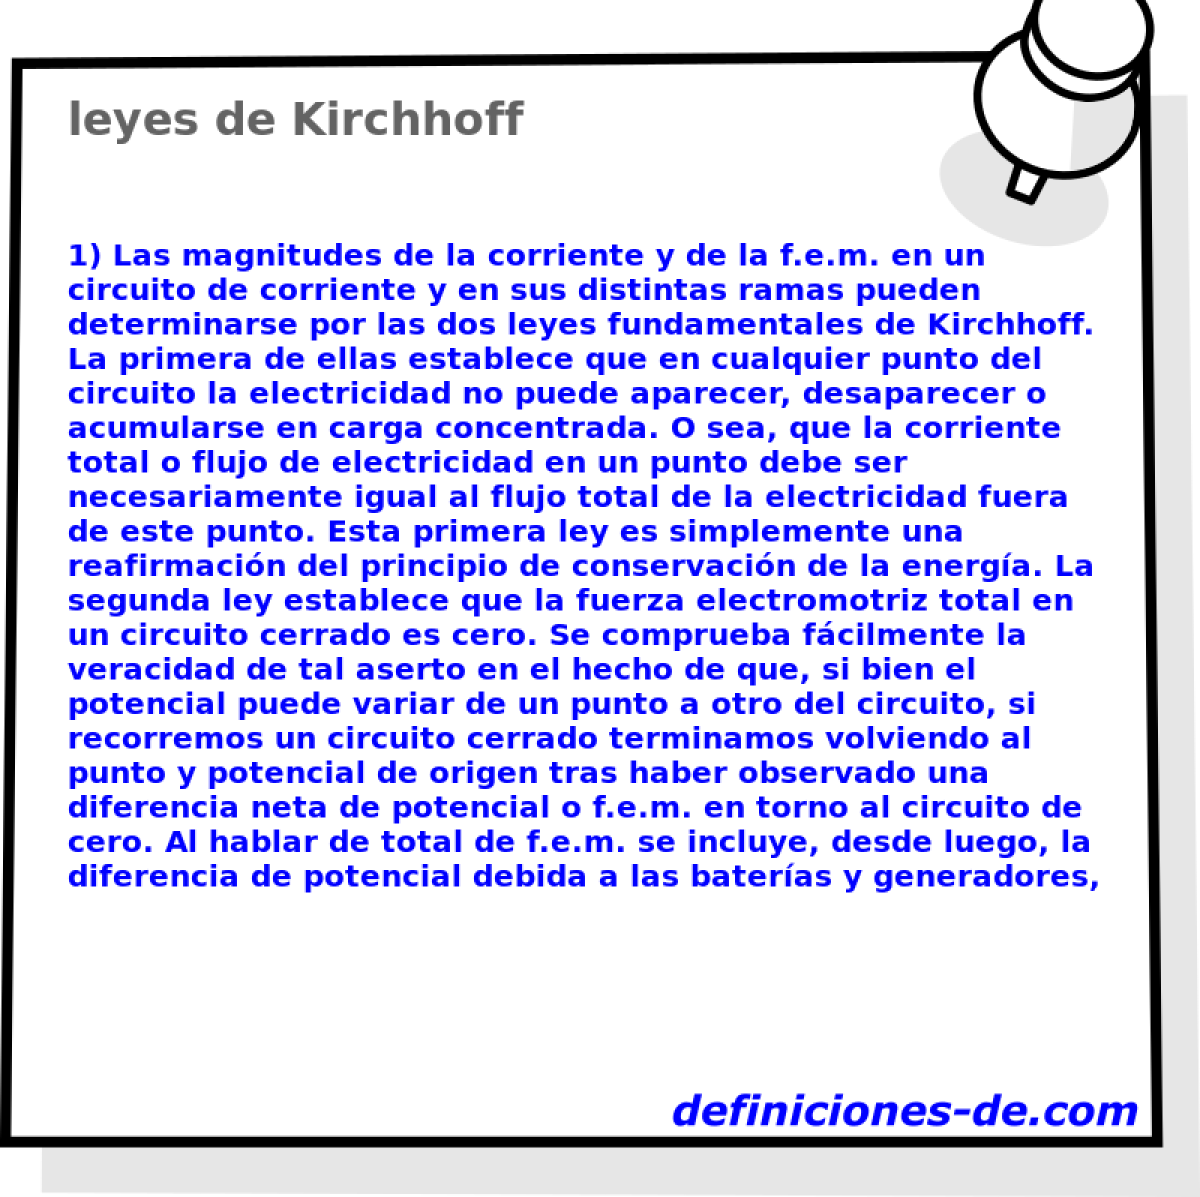 leyes de Kirchhoff 